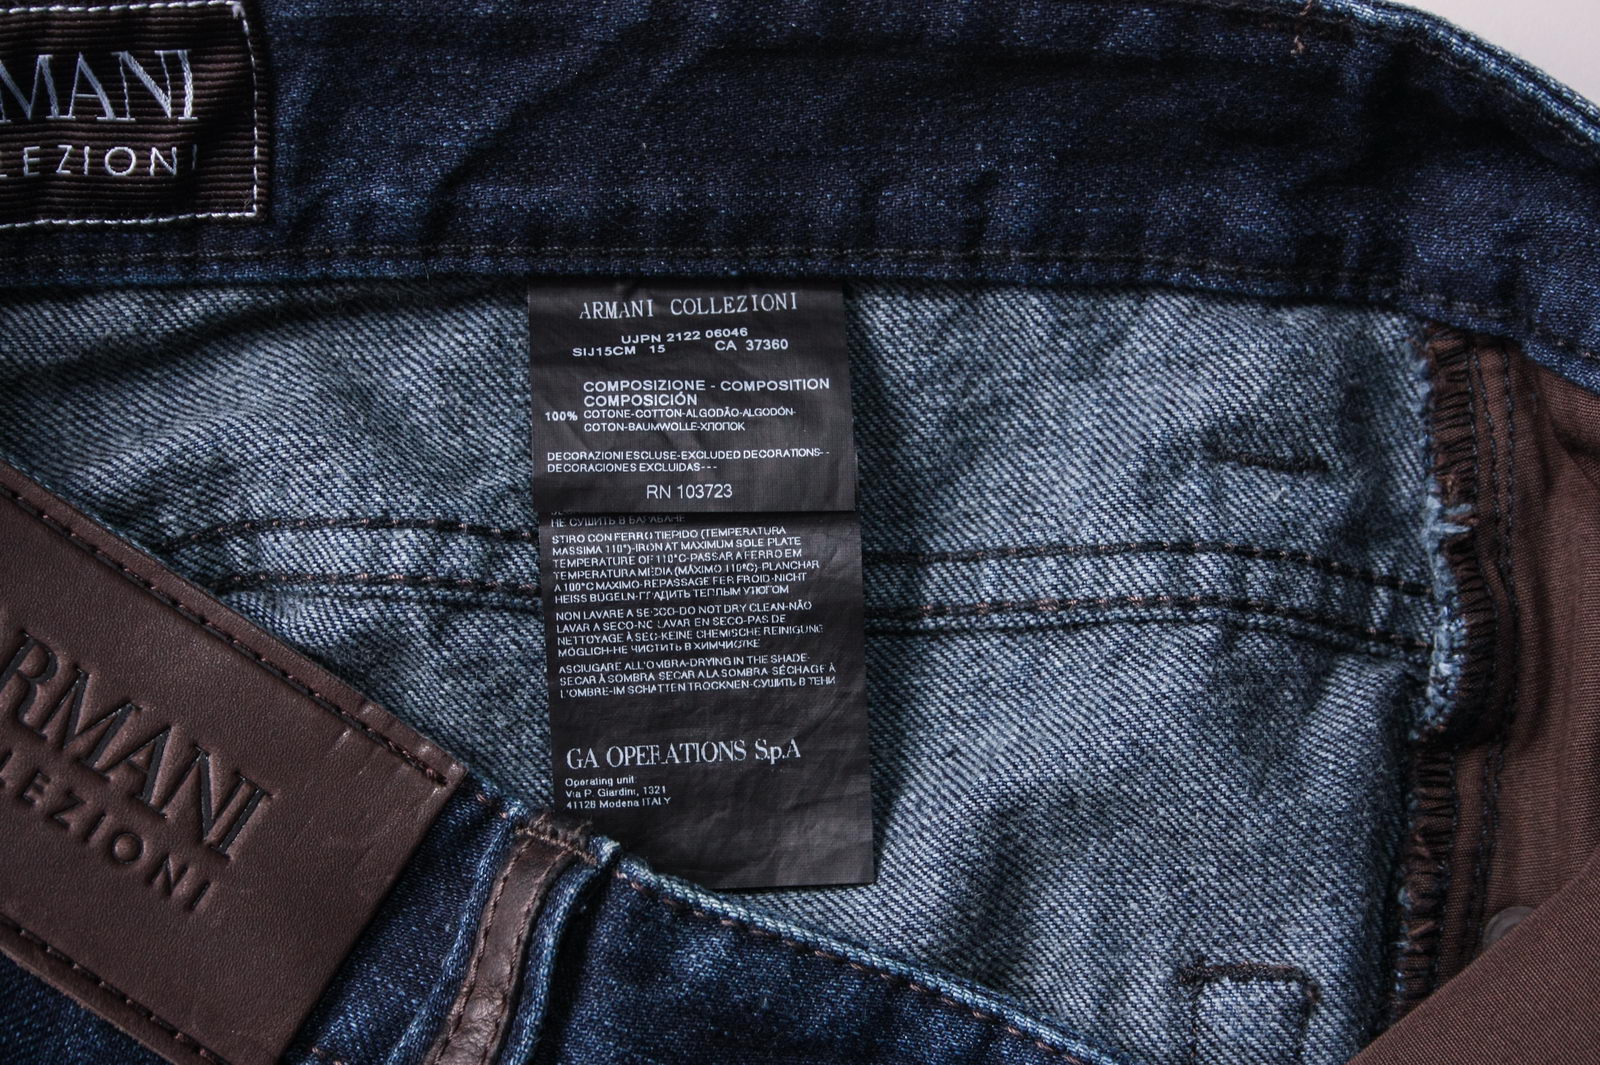 Armani Jeans AJ Jeans SLIM FIT Cotton Man Denim SIJ15CM 15 Sz.31 MAKE ...